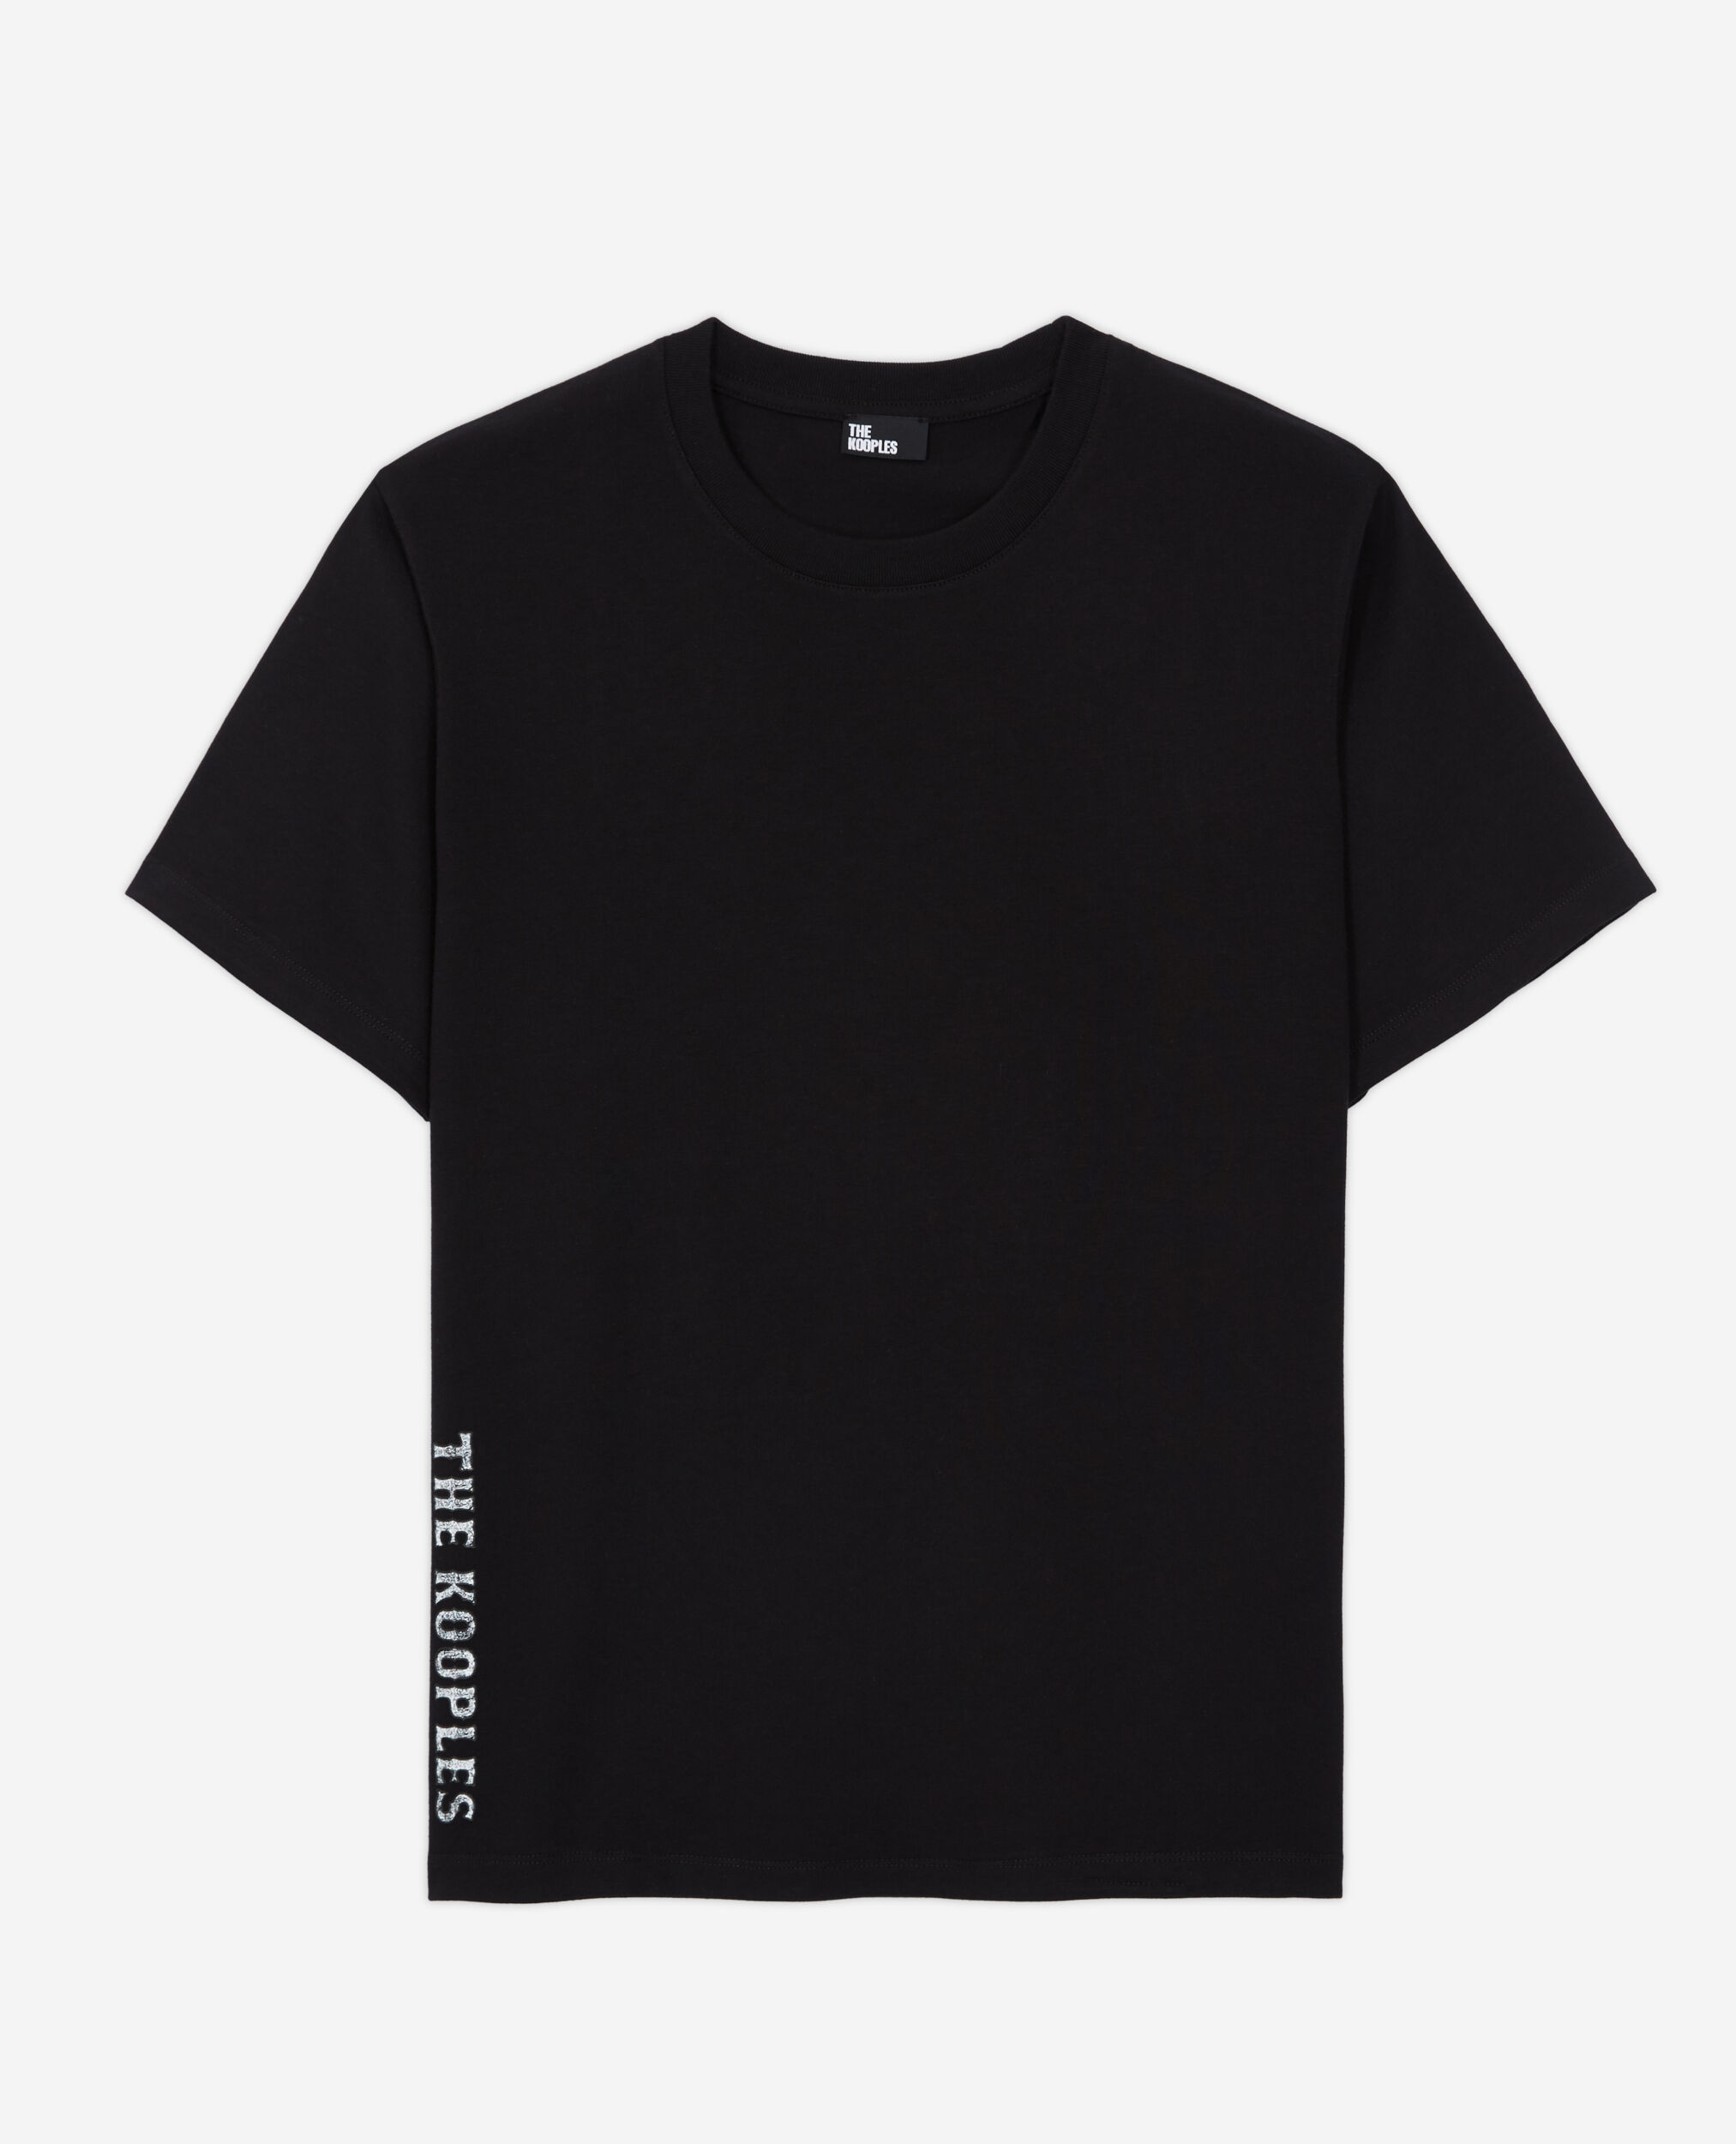 T-shirt Homme logo The Kooples noir, BLACK, hi-res image number null